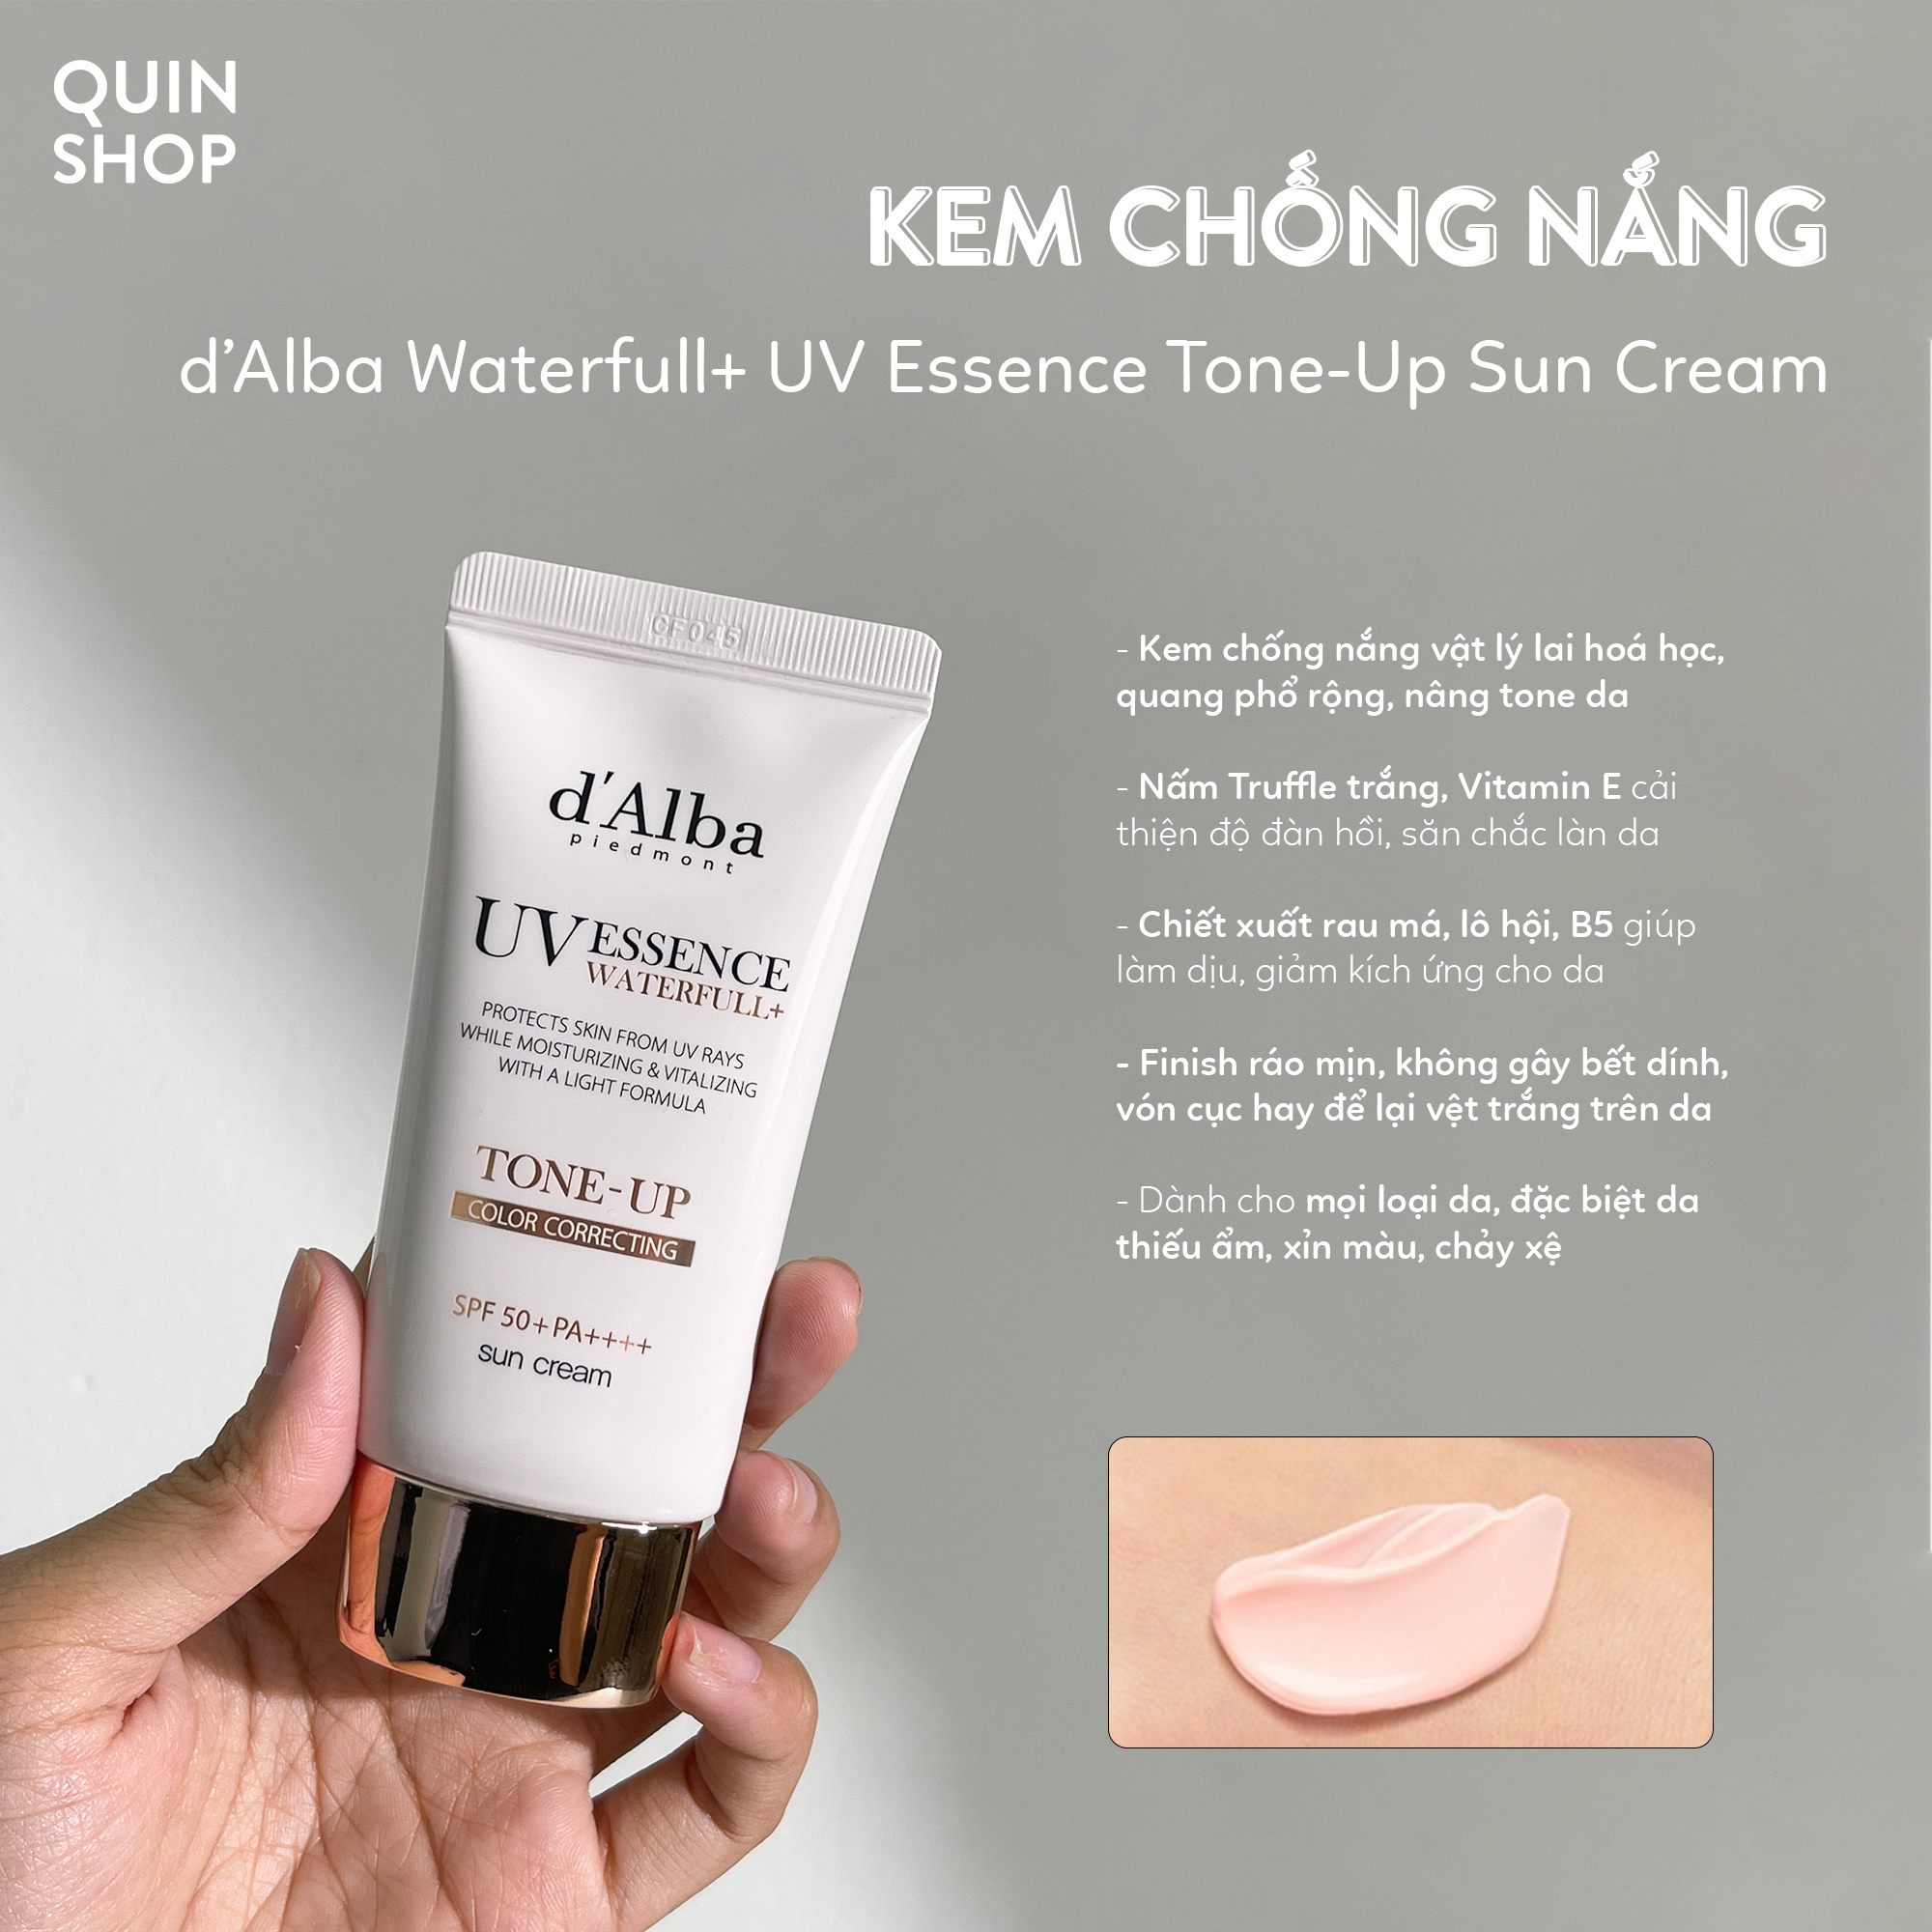 Kem Chống Nắng Dưỡng Ẩm, Ngừa Lão Hoá, Làm Sáng Da d’Alba Waterfull+ UV Essence Tone-Up Sun Cream SPF50+ PA++++